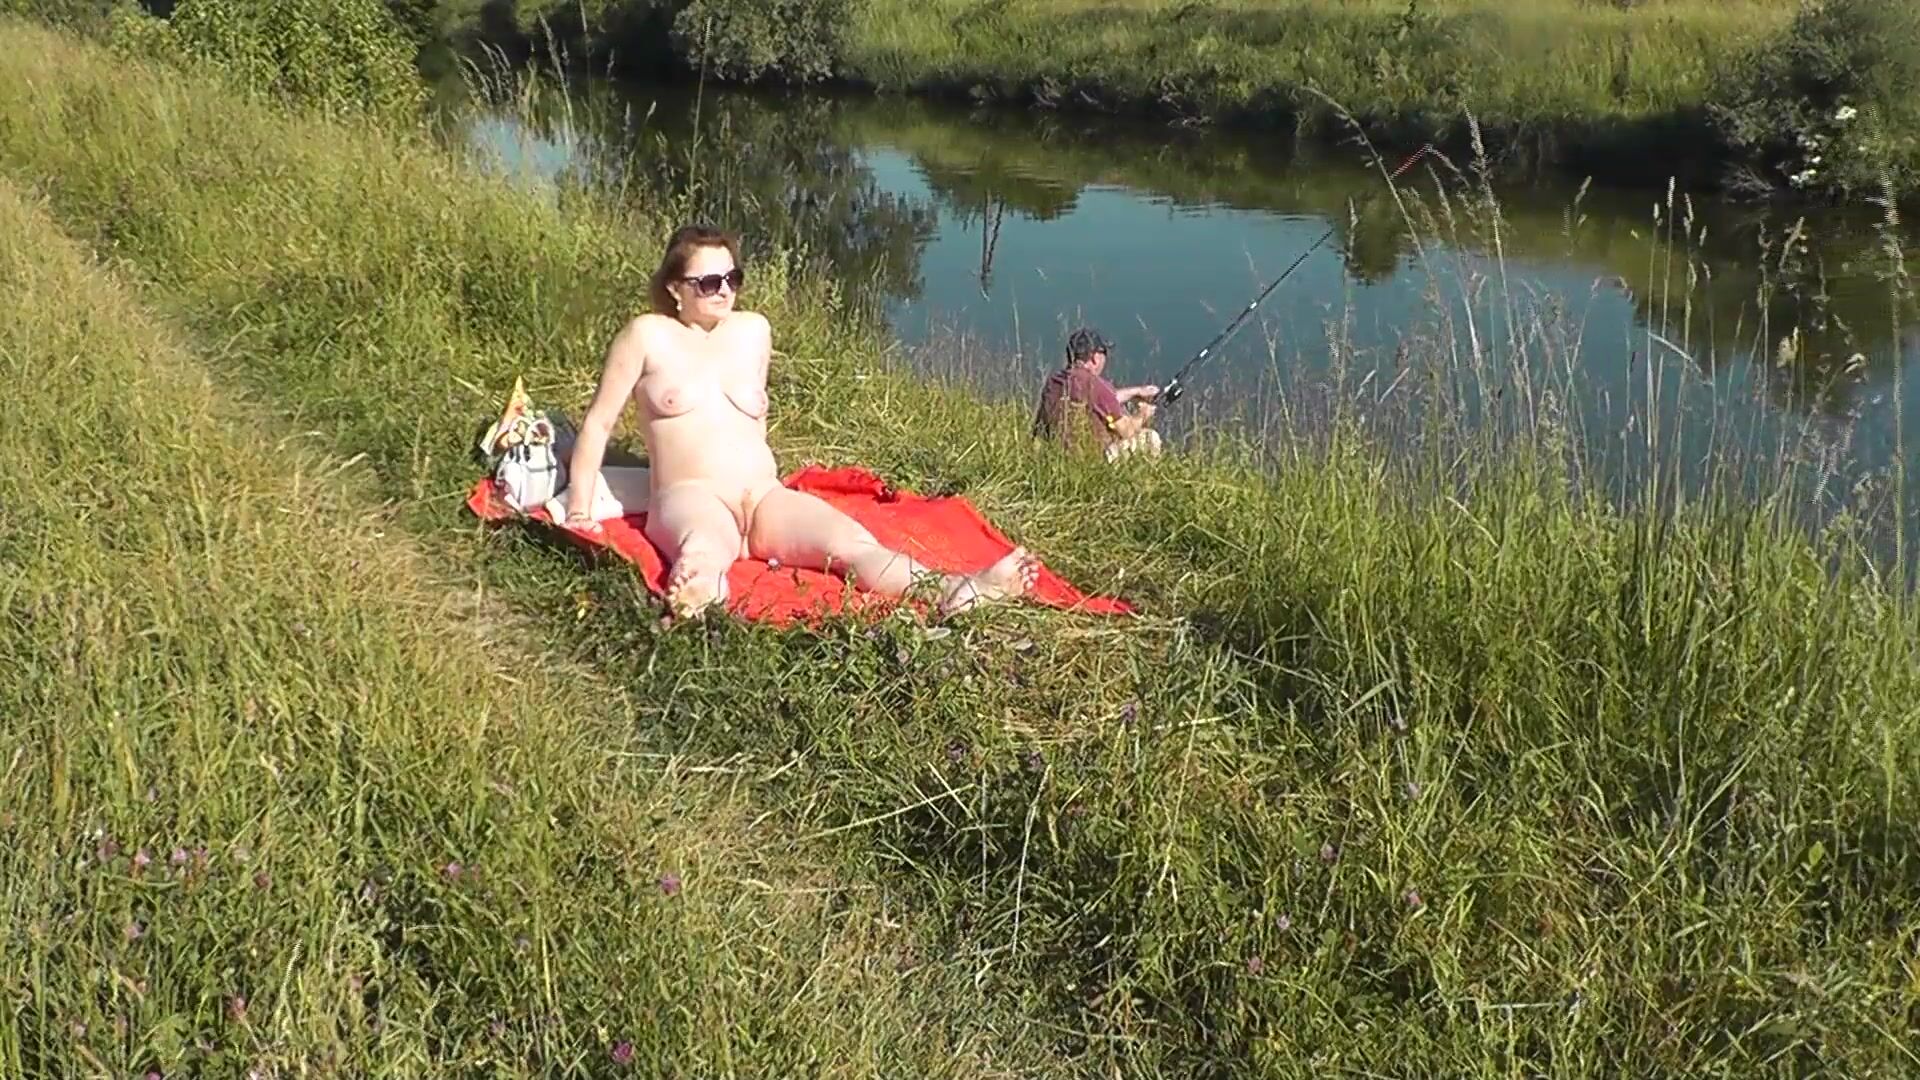 MILF sexy Frina am Flussufer entkleidet und sonnt sich nackt. Zufällige Mann Fischer beobachten für sie, und am Ende beschlossen, nackte Frau zu verbinden. Wilder Strand. Nudisten Strand pic